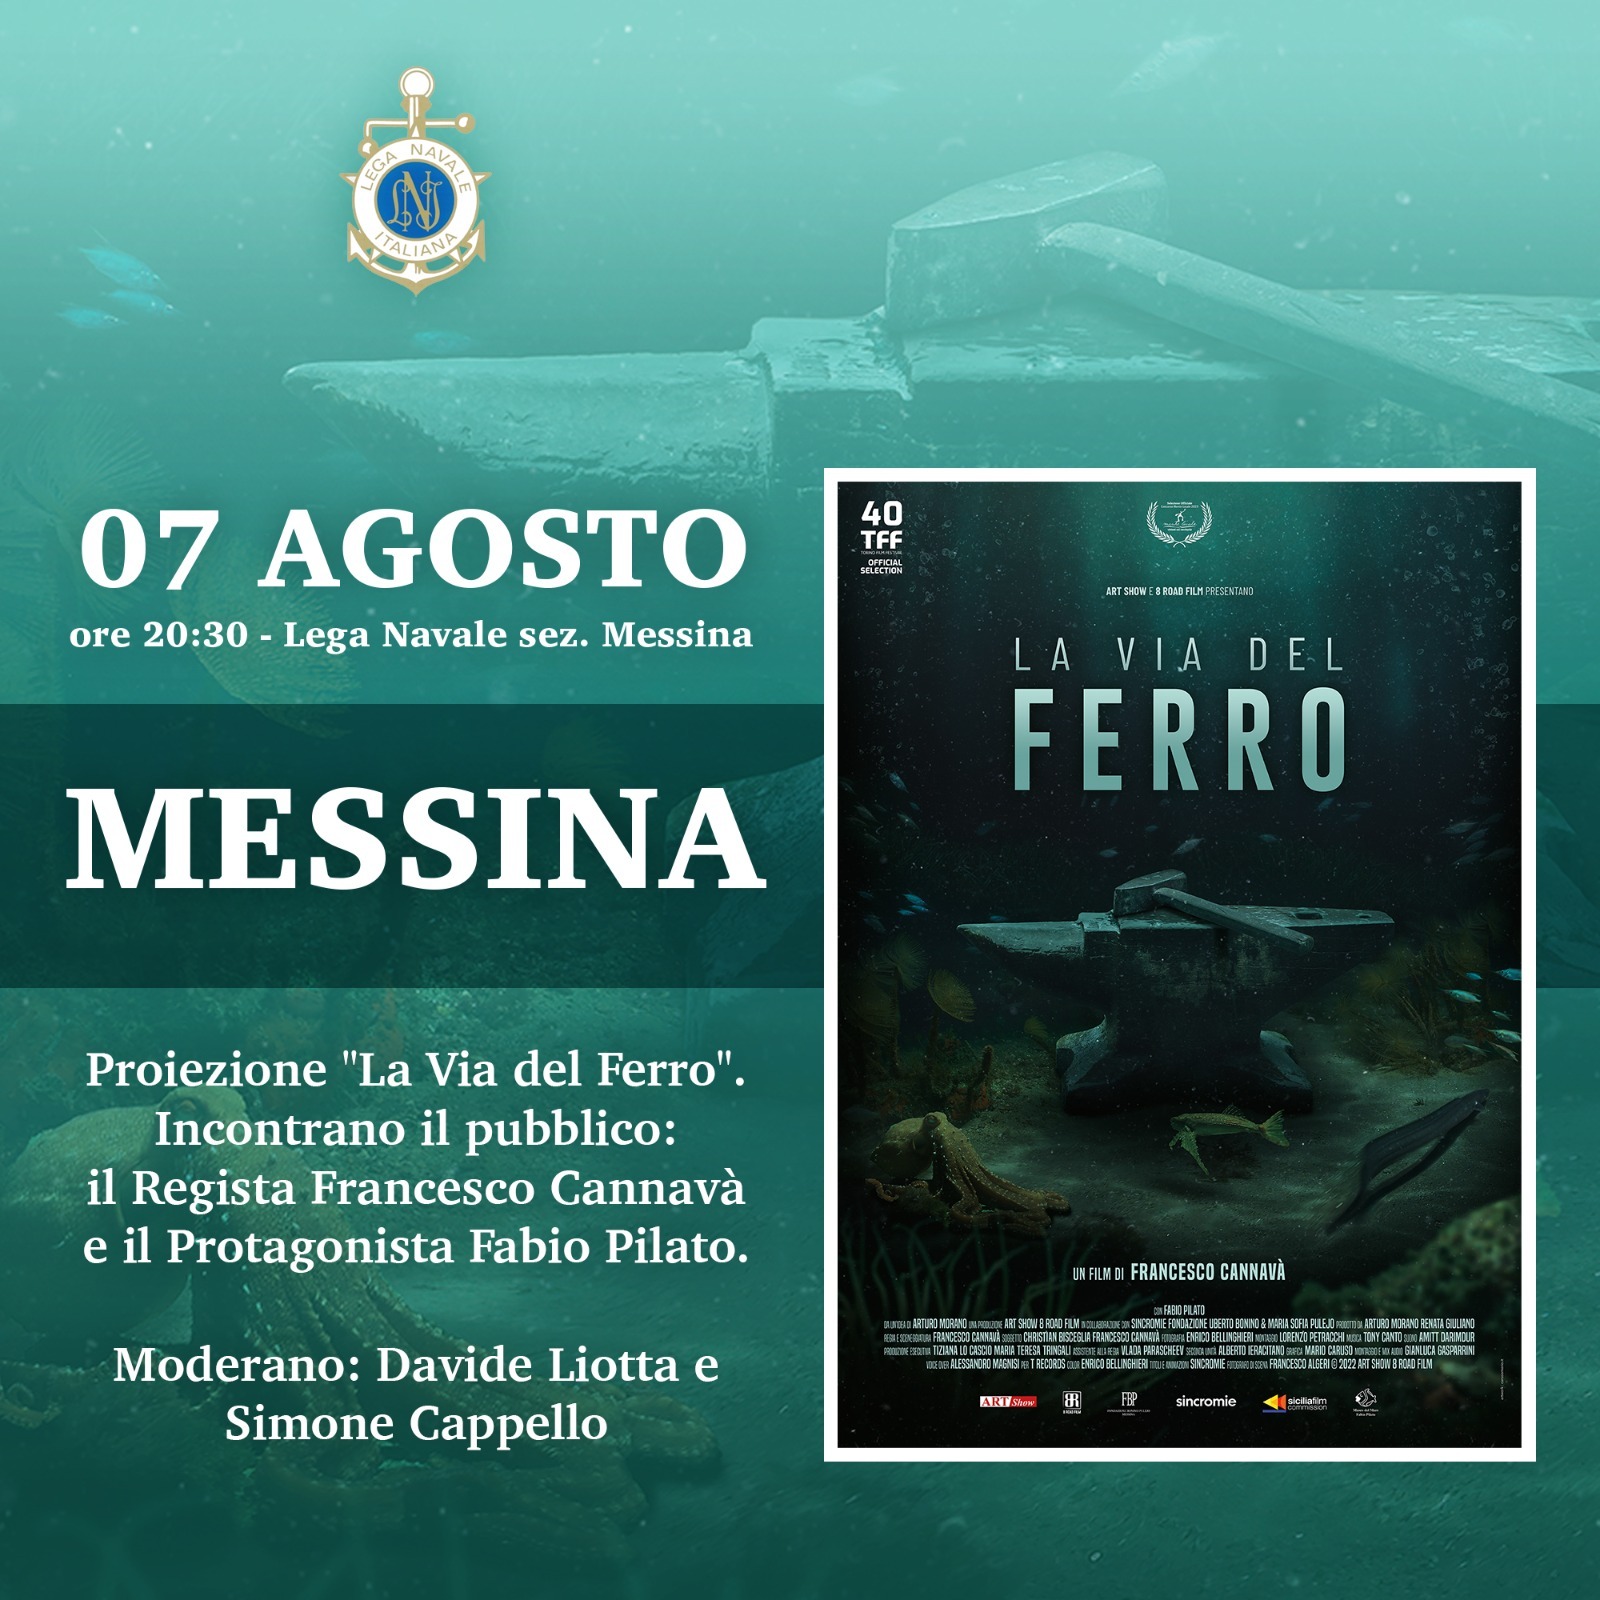 La via del ferro: sabato 7 agosto presentazione del docufilm alla Lega Navale di Messina